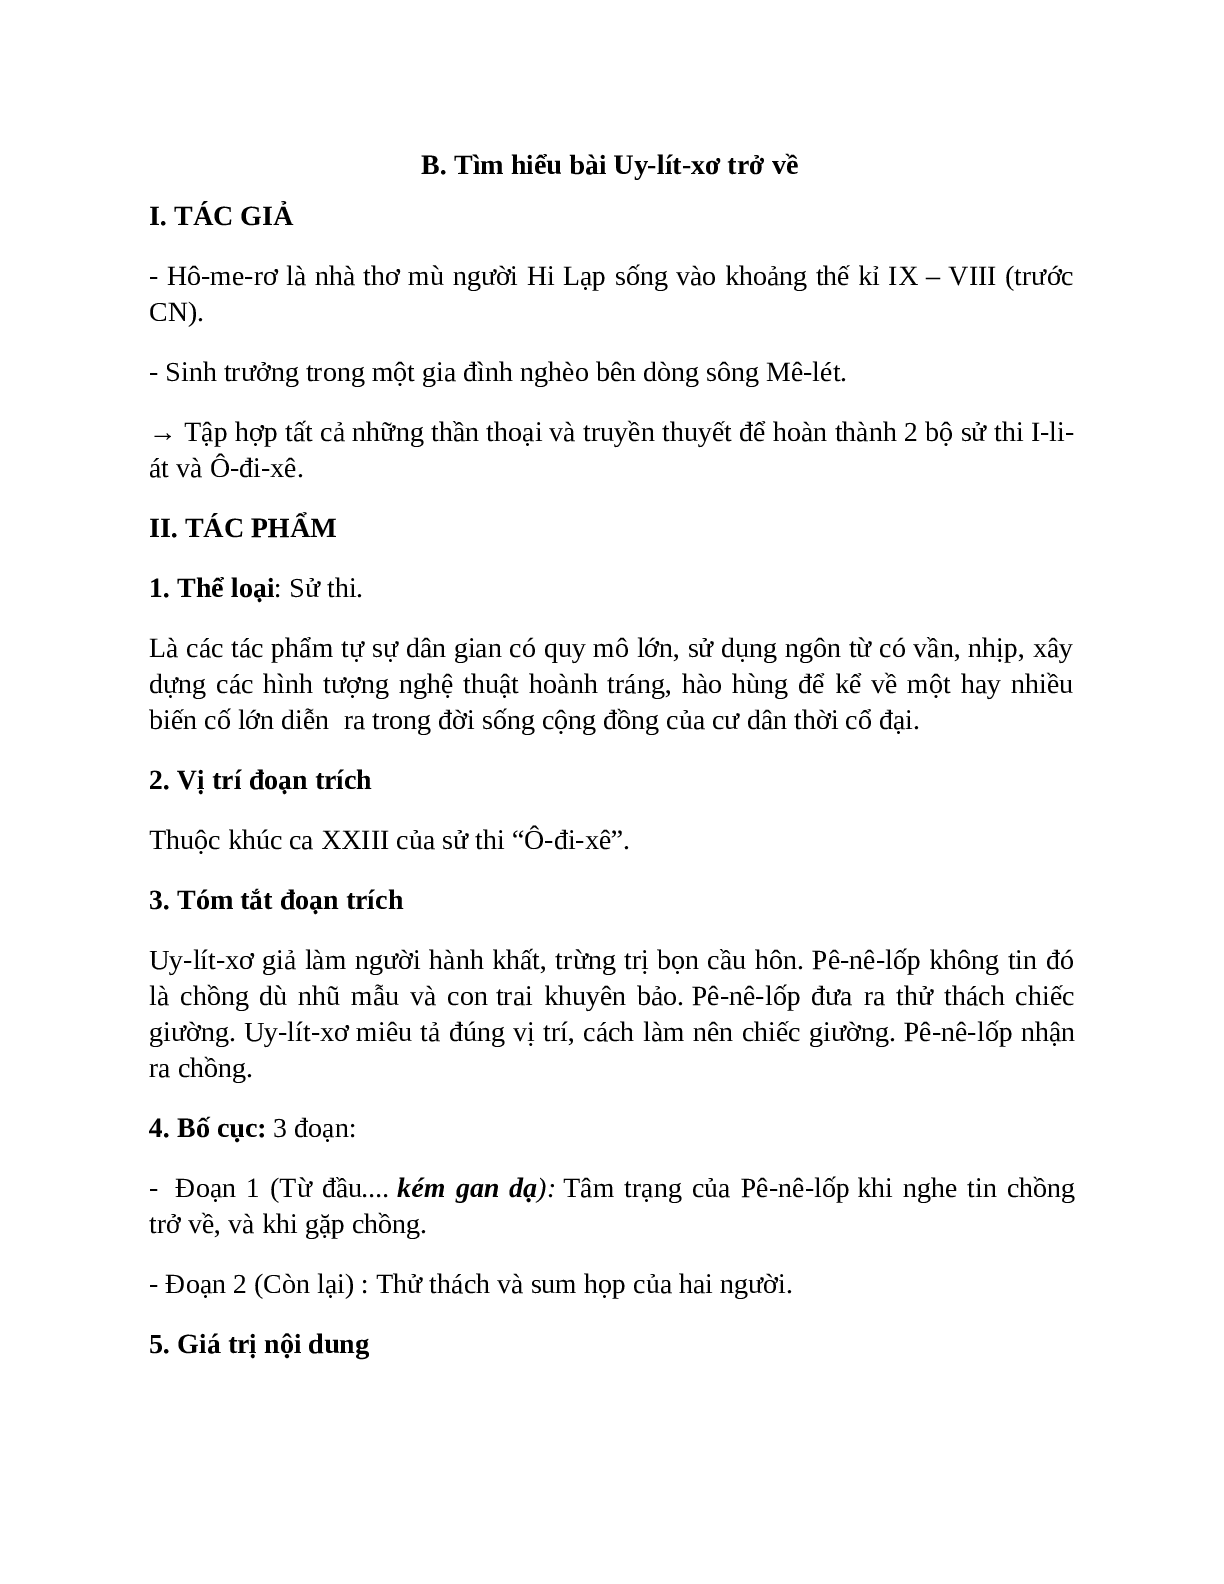 Sơ đồ tư duy bài Uy-lít-xơ trở về dễ nhớ, ngắn nhất - Ngữ văn lớp 10 (trang 2)